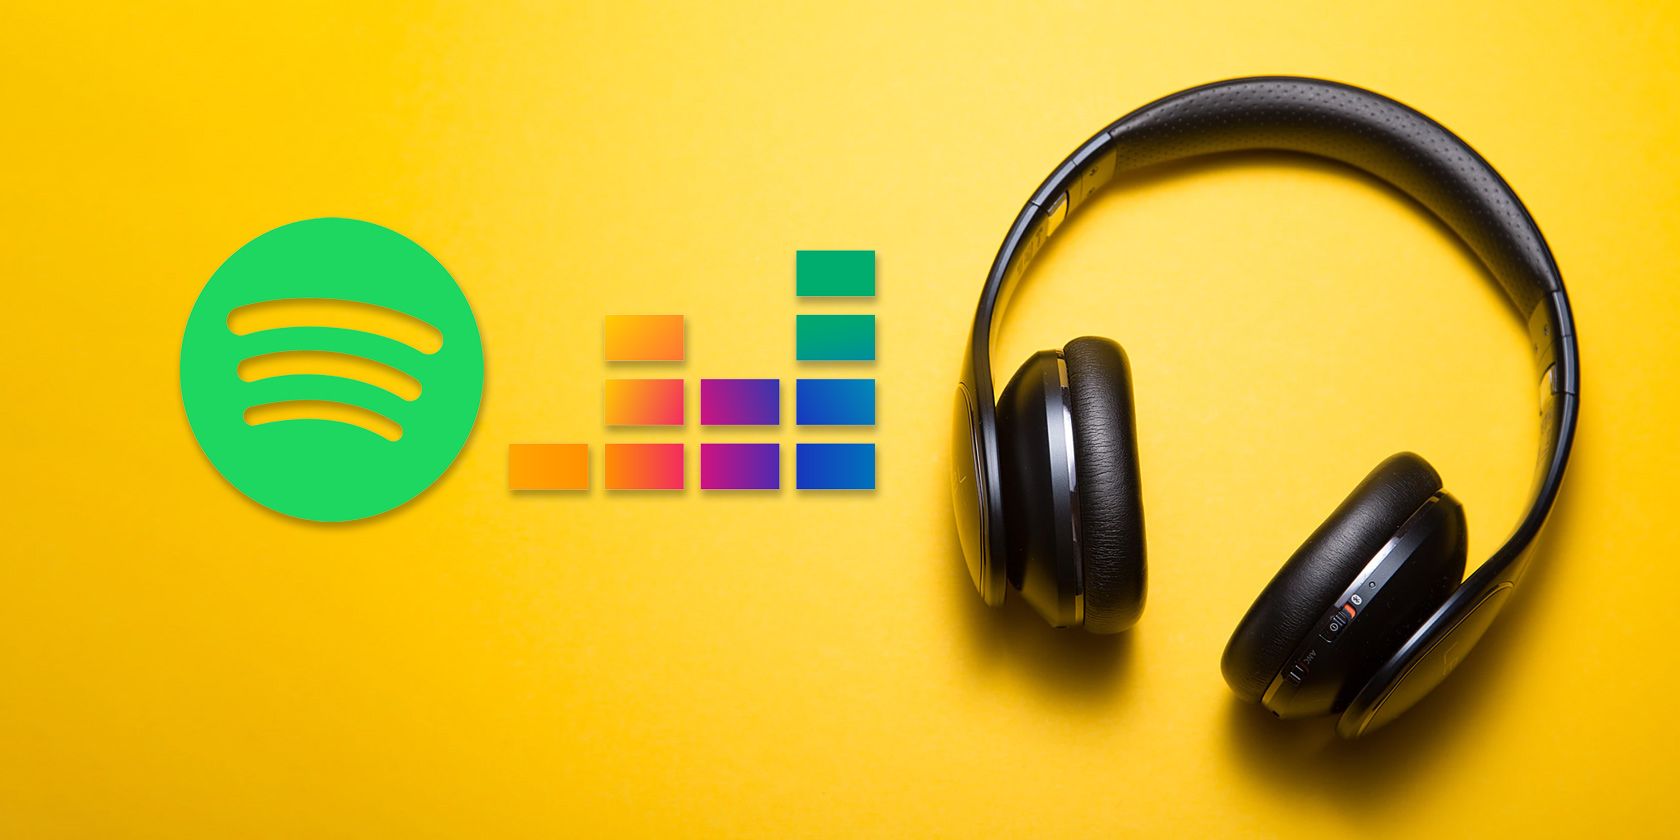 Deezer and Spotify logos next to a pair of Headphones